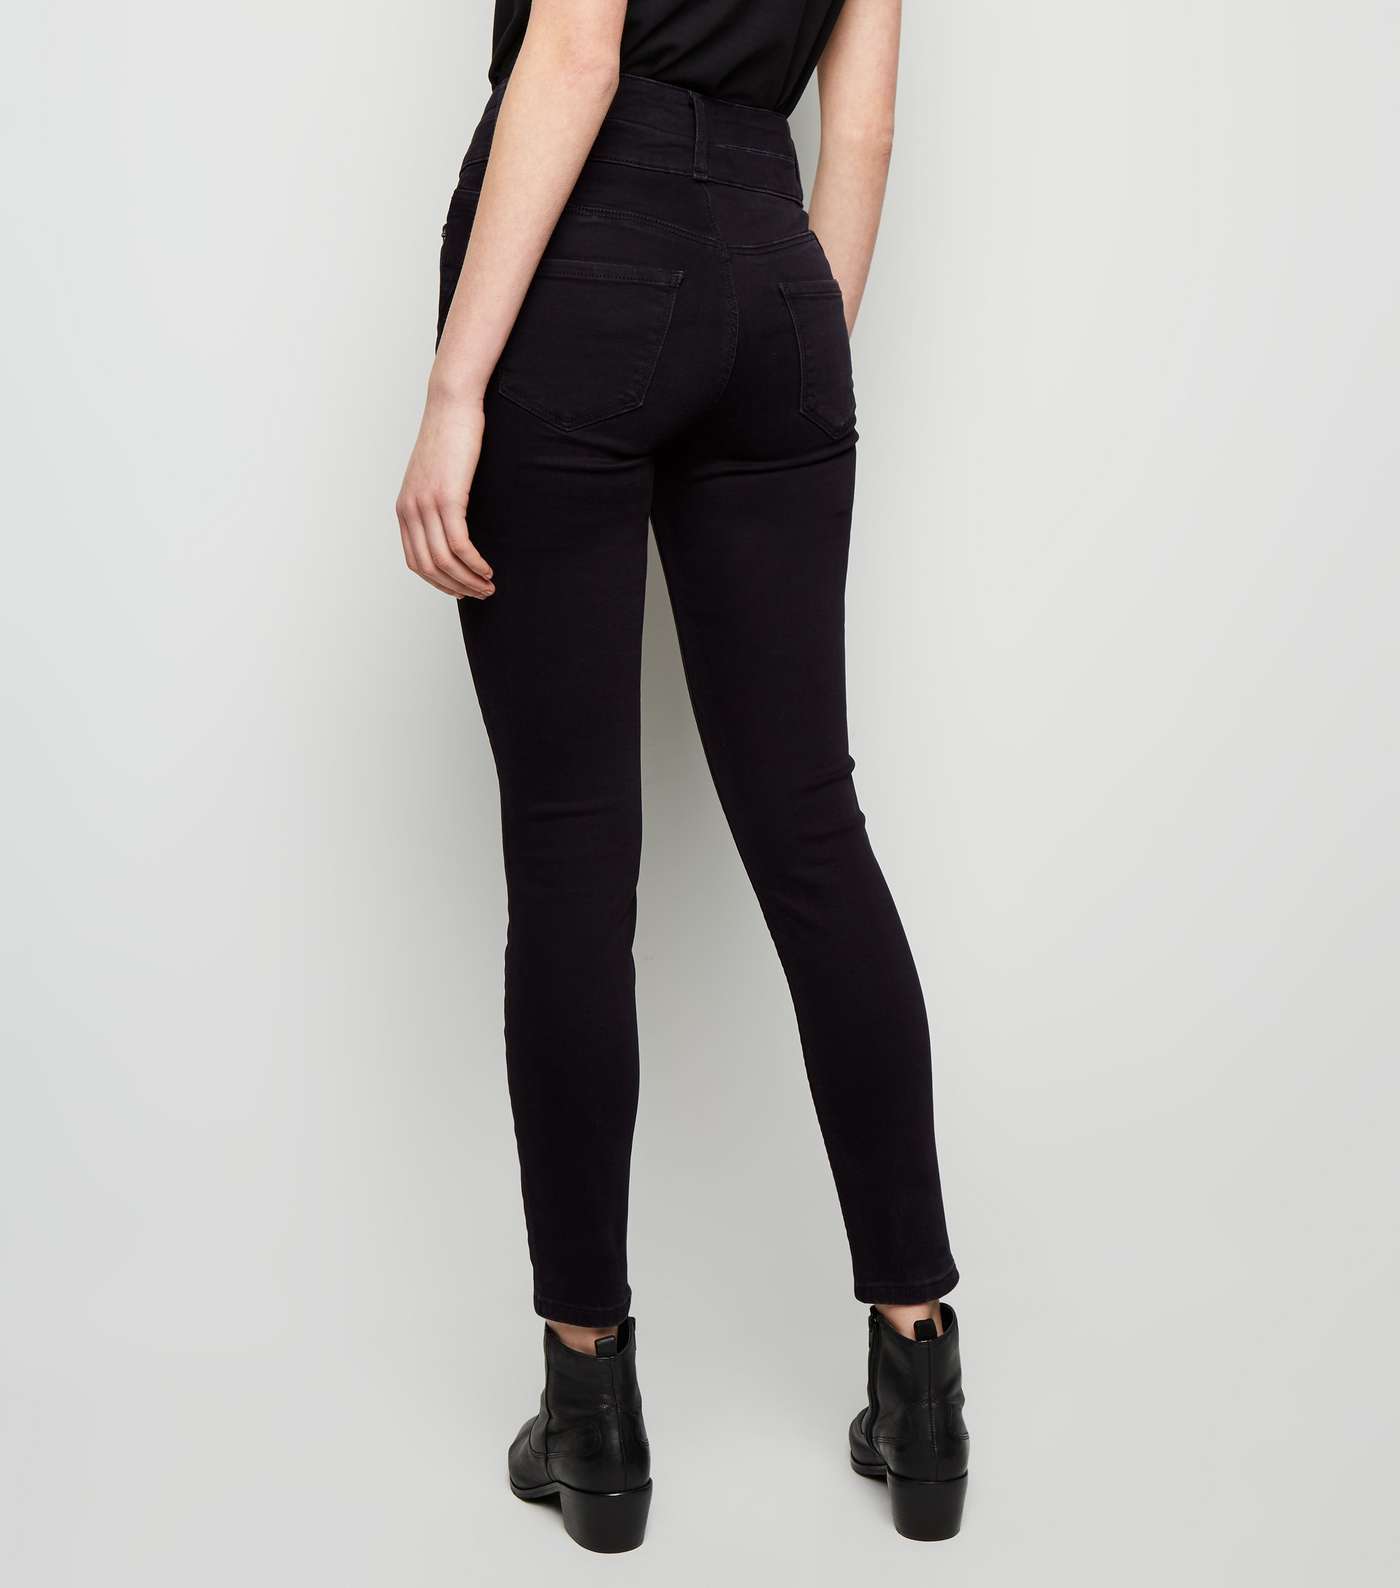 Black High Waist Skinny 'Lift & Shape' Jeans Image 3